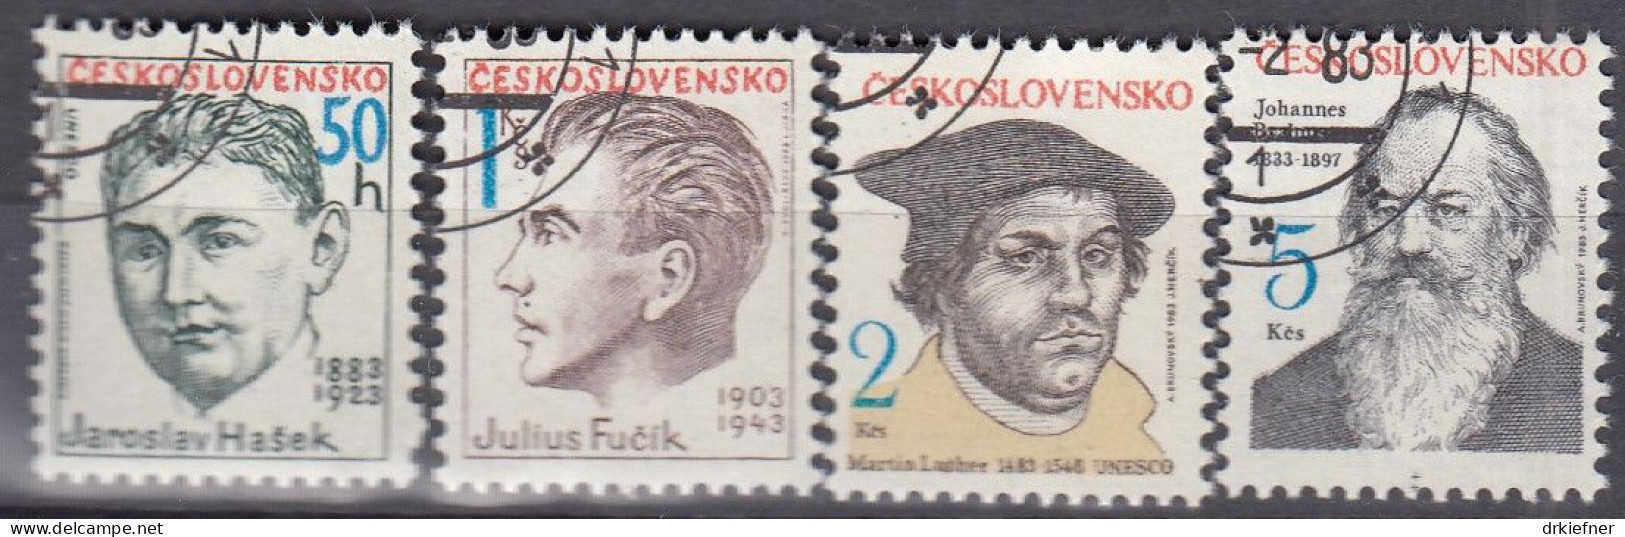 TSCHECHOSLOWAKEI  2699-2702, Gestempelt, Persönlichkeiten, Martin Luther, Johannes Brahms U.a., 1983 - Usados